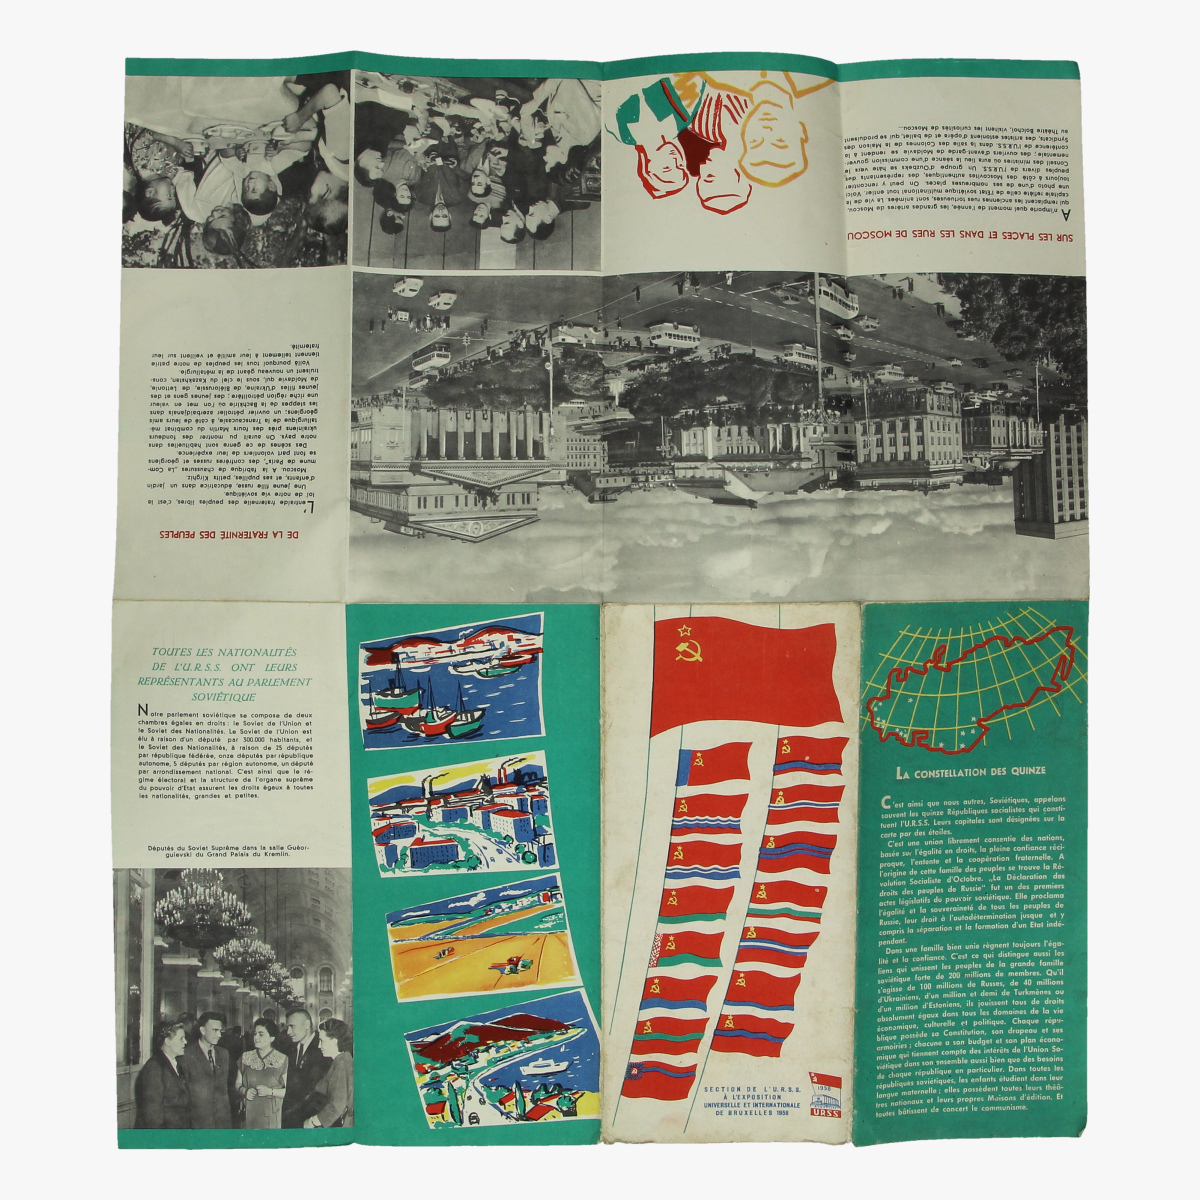 Afbeeldingen van expo 58 section de l' u.r.s.s. a l' exposition universele et internationale de bxl 1958